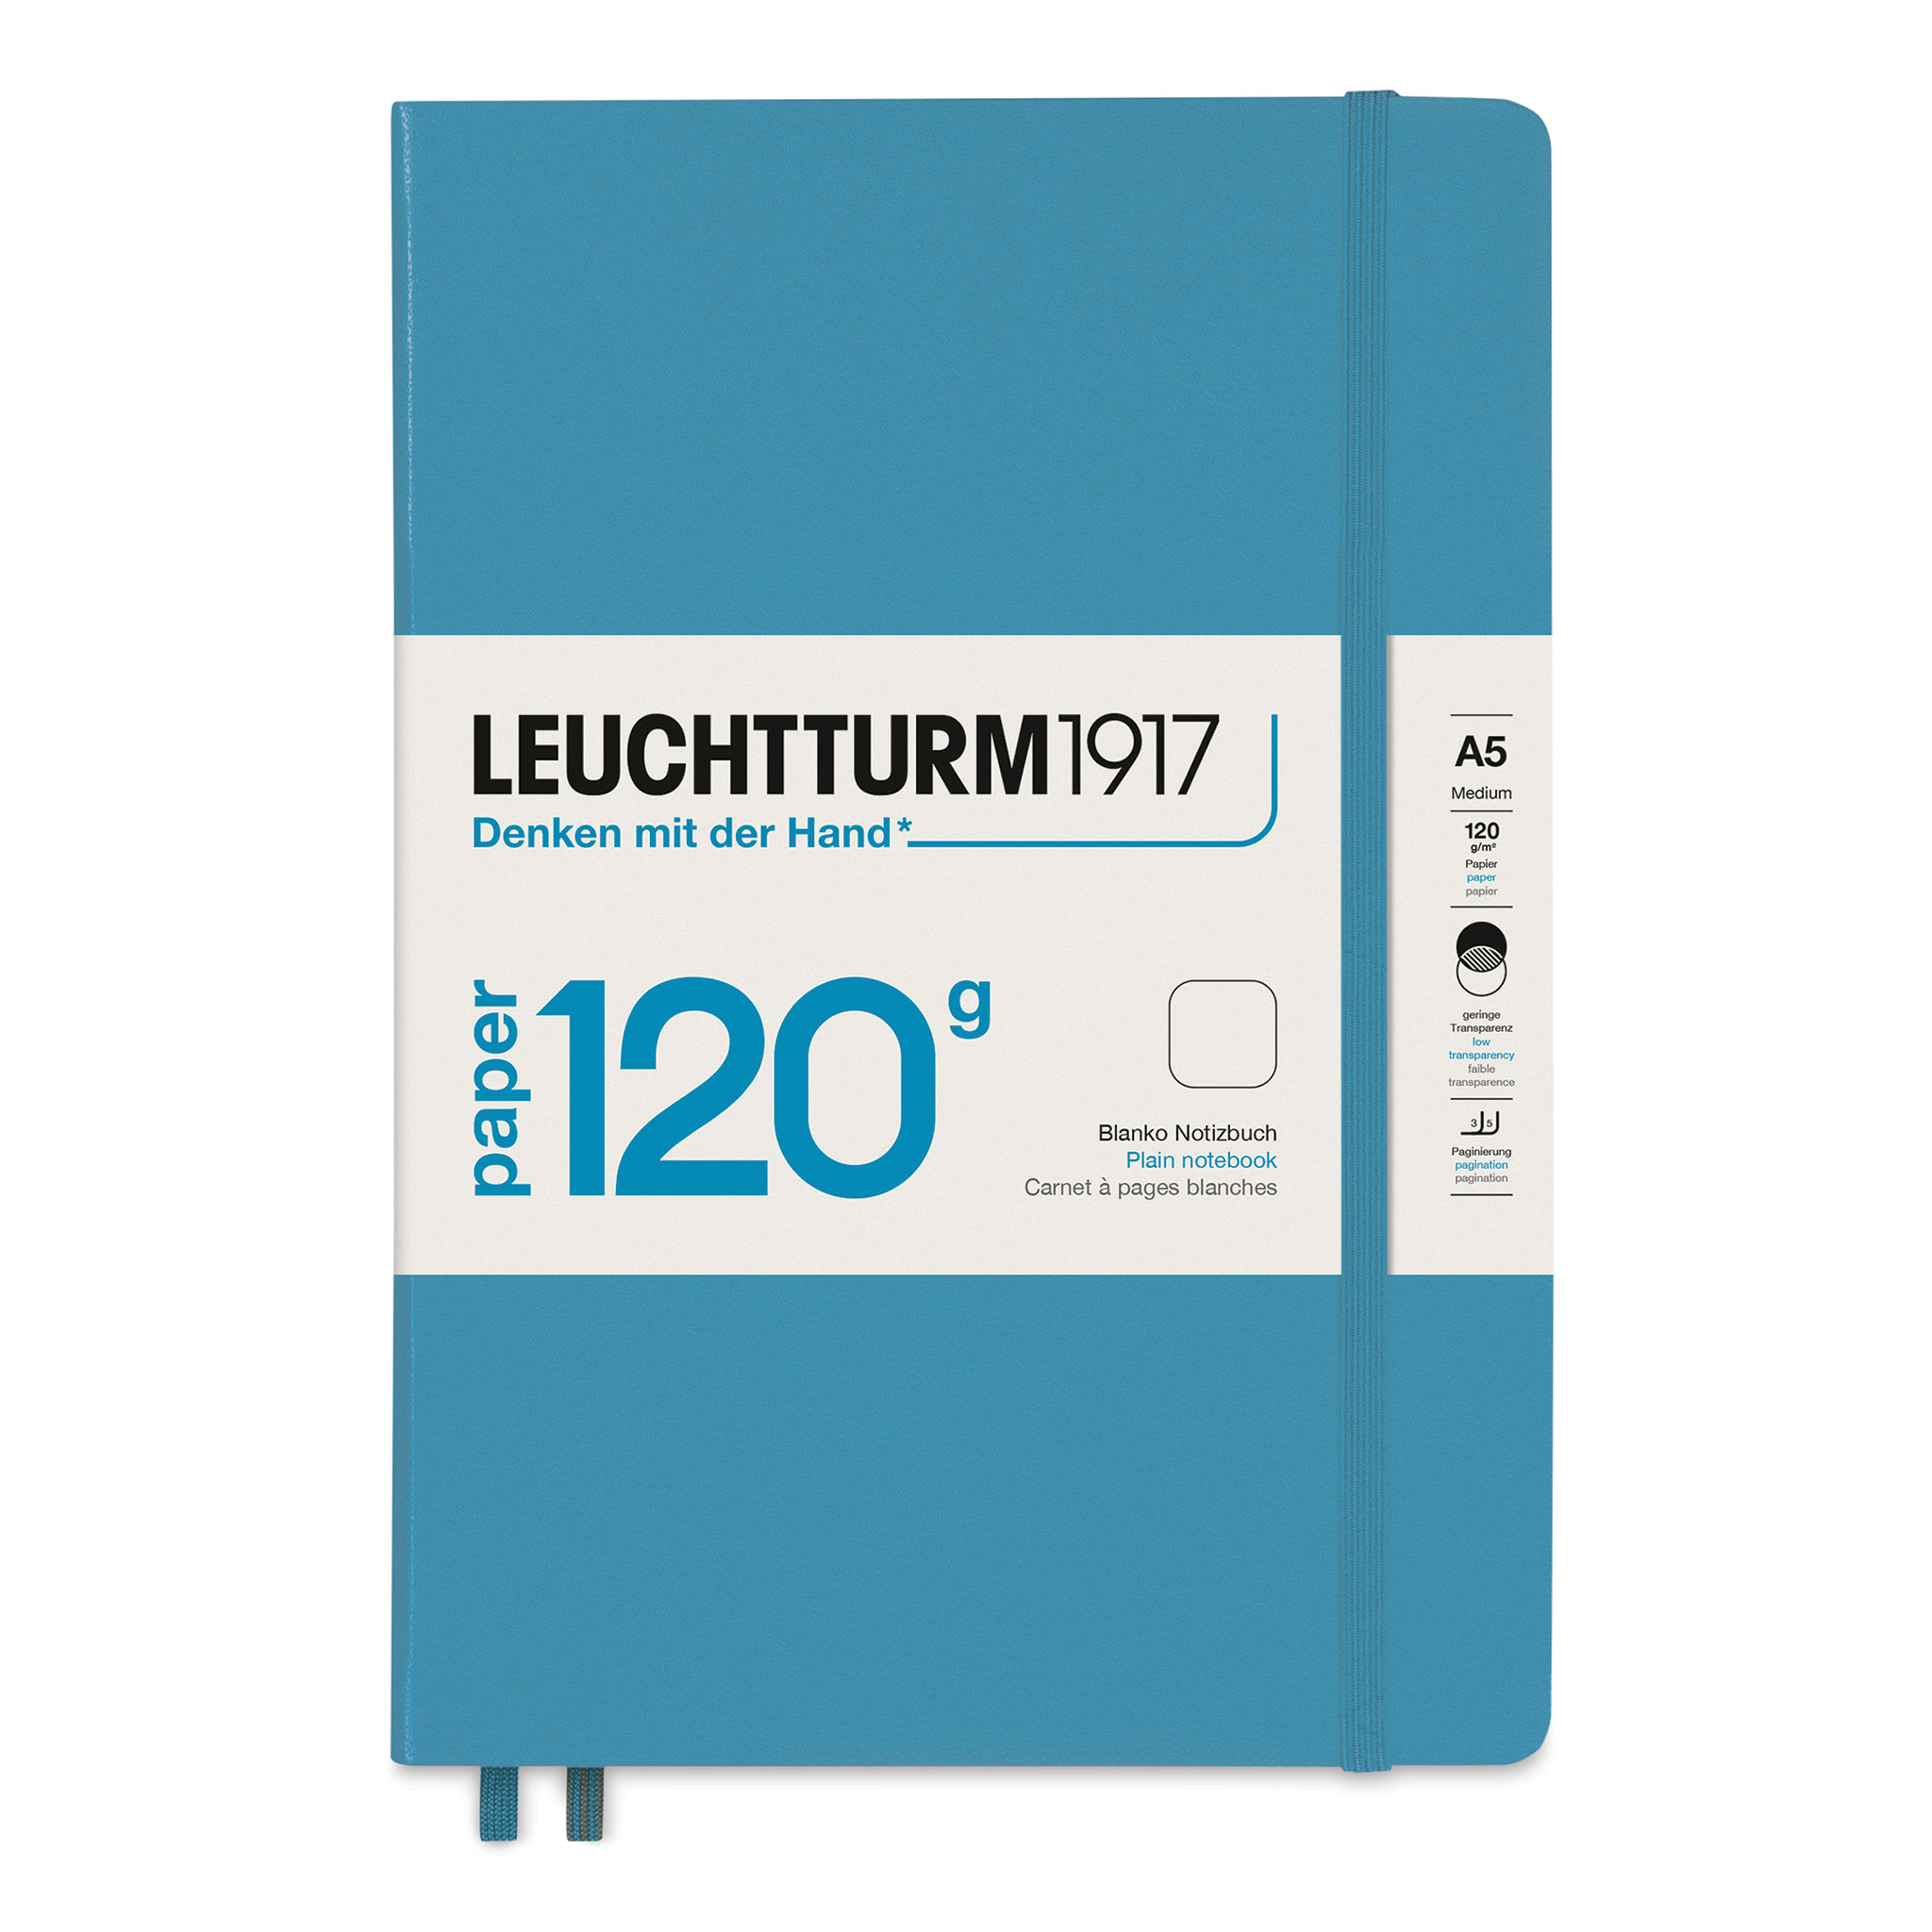 Leuchtturm1917 A5 Sketchbook New 2020 Version Review